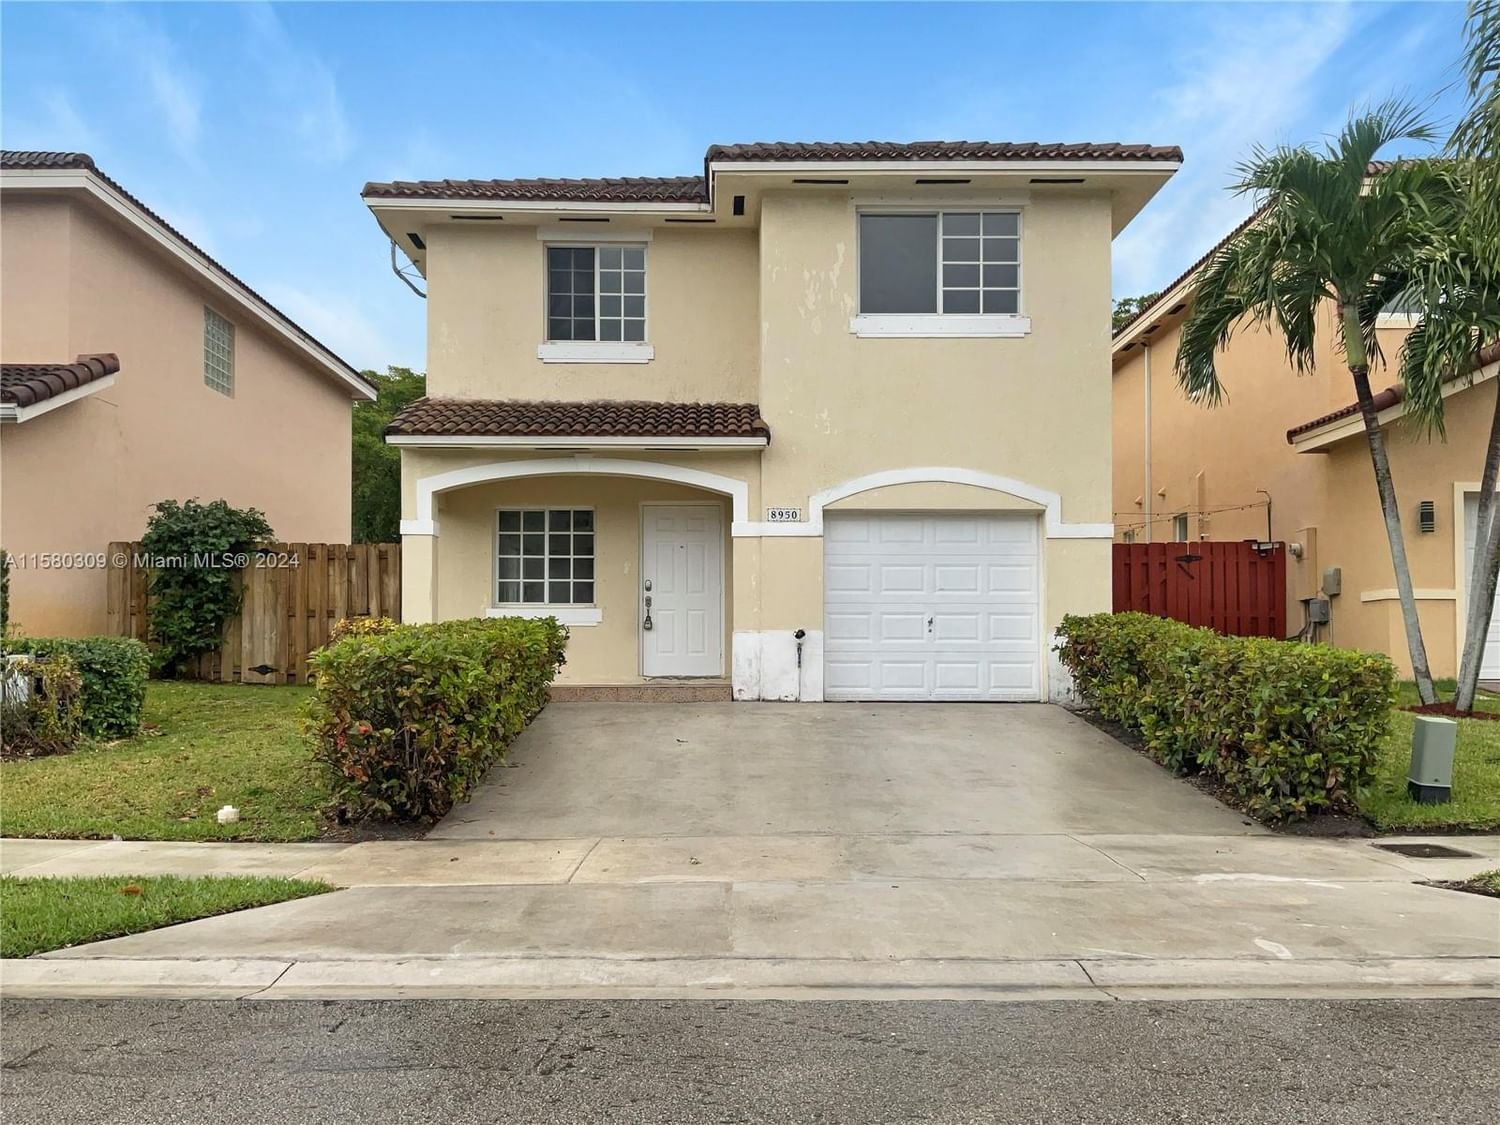 Real estate property located at 8950 215th Ln, Miami-Dade County, PRECIOUS HOMES AT LAKES B, Cutler Bay, FL